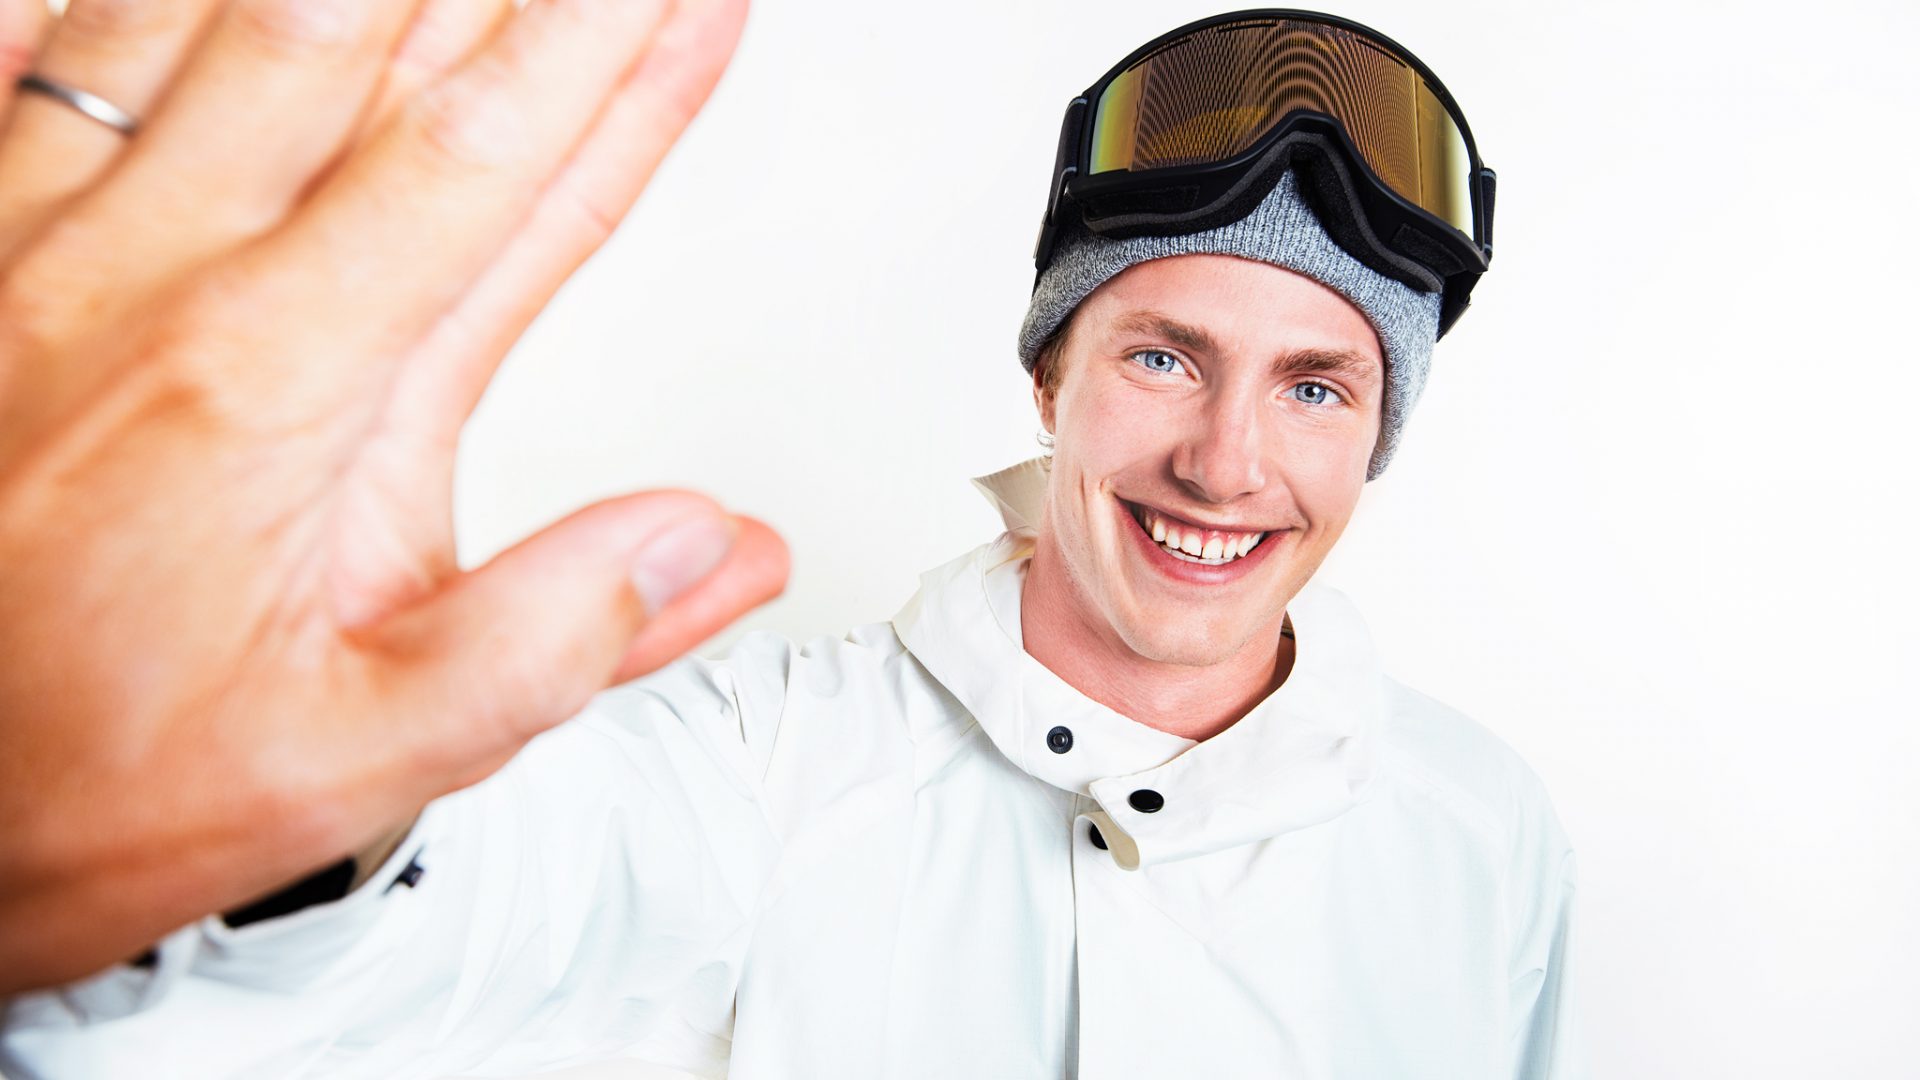 Sven Thorgren Spektrum Sponsorship Sweden Snowboarding